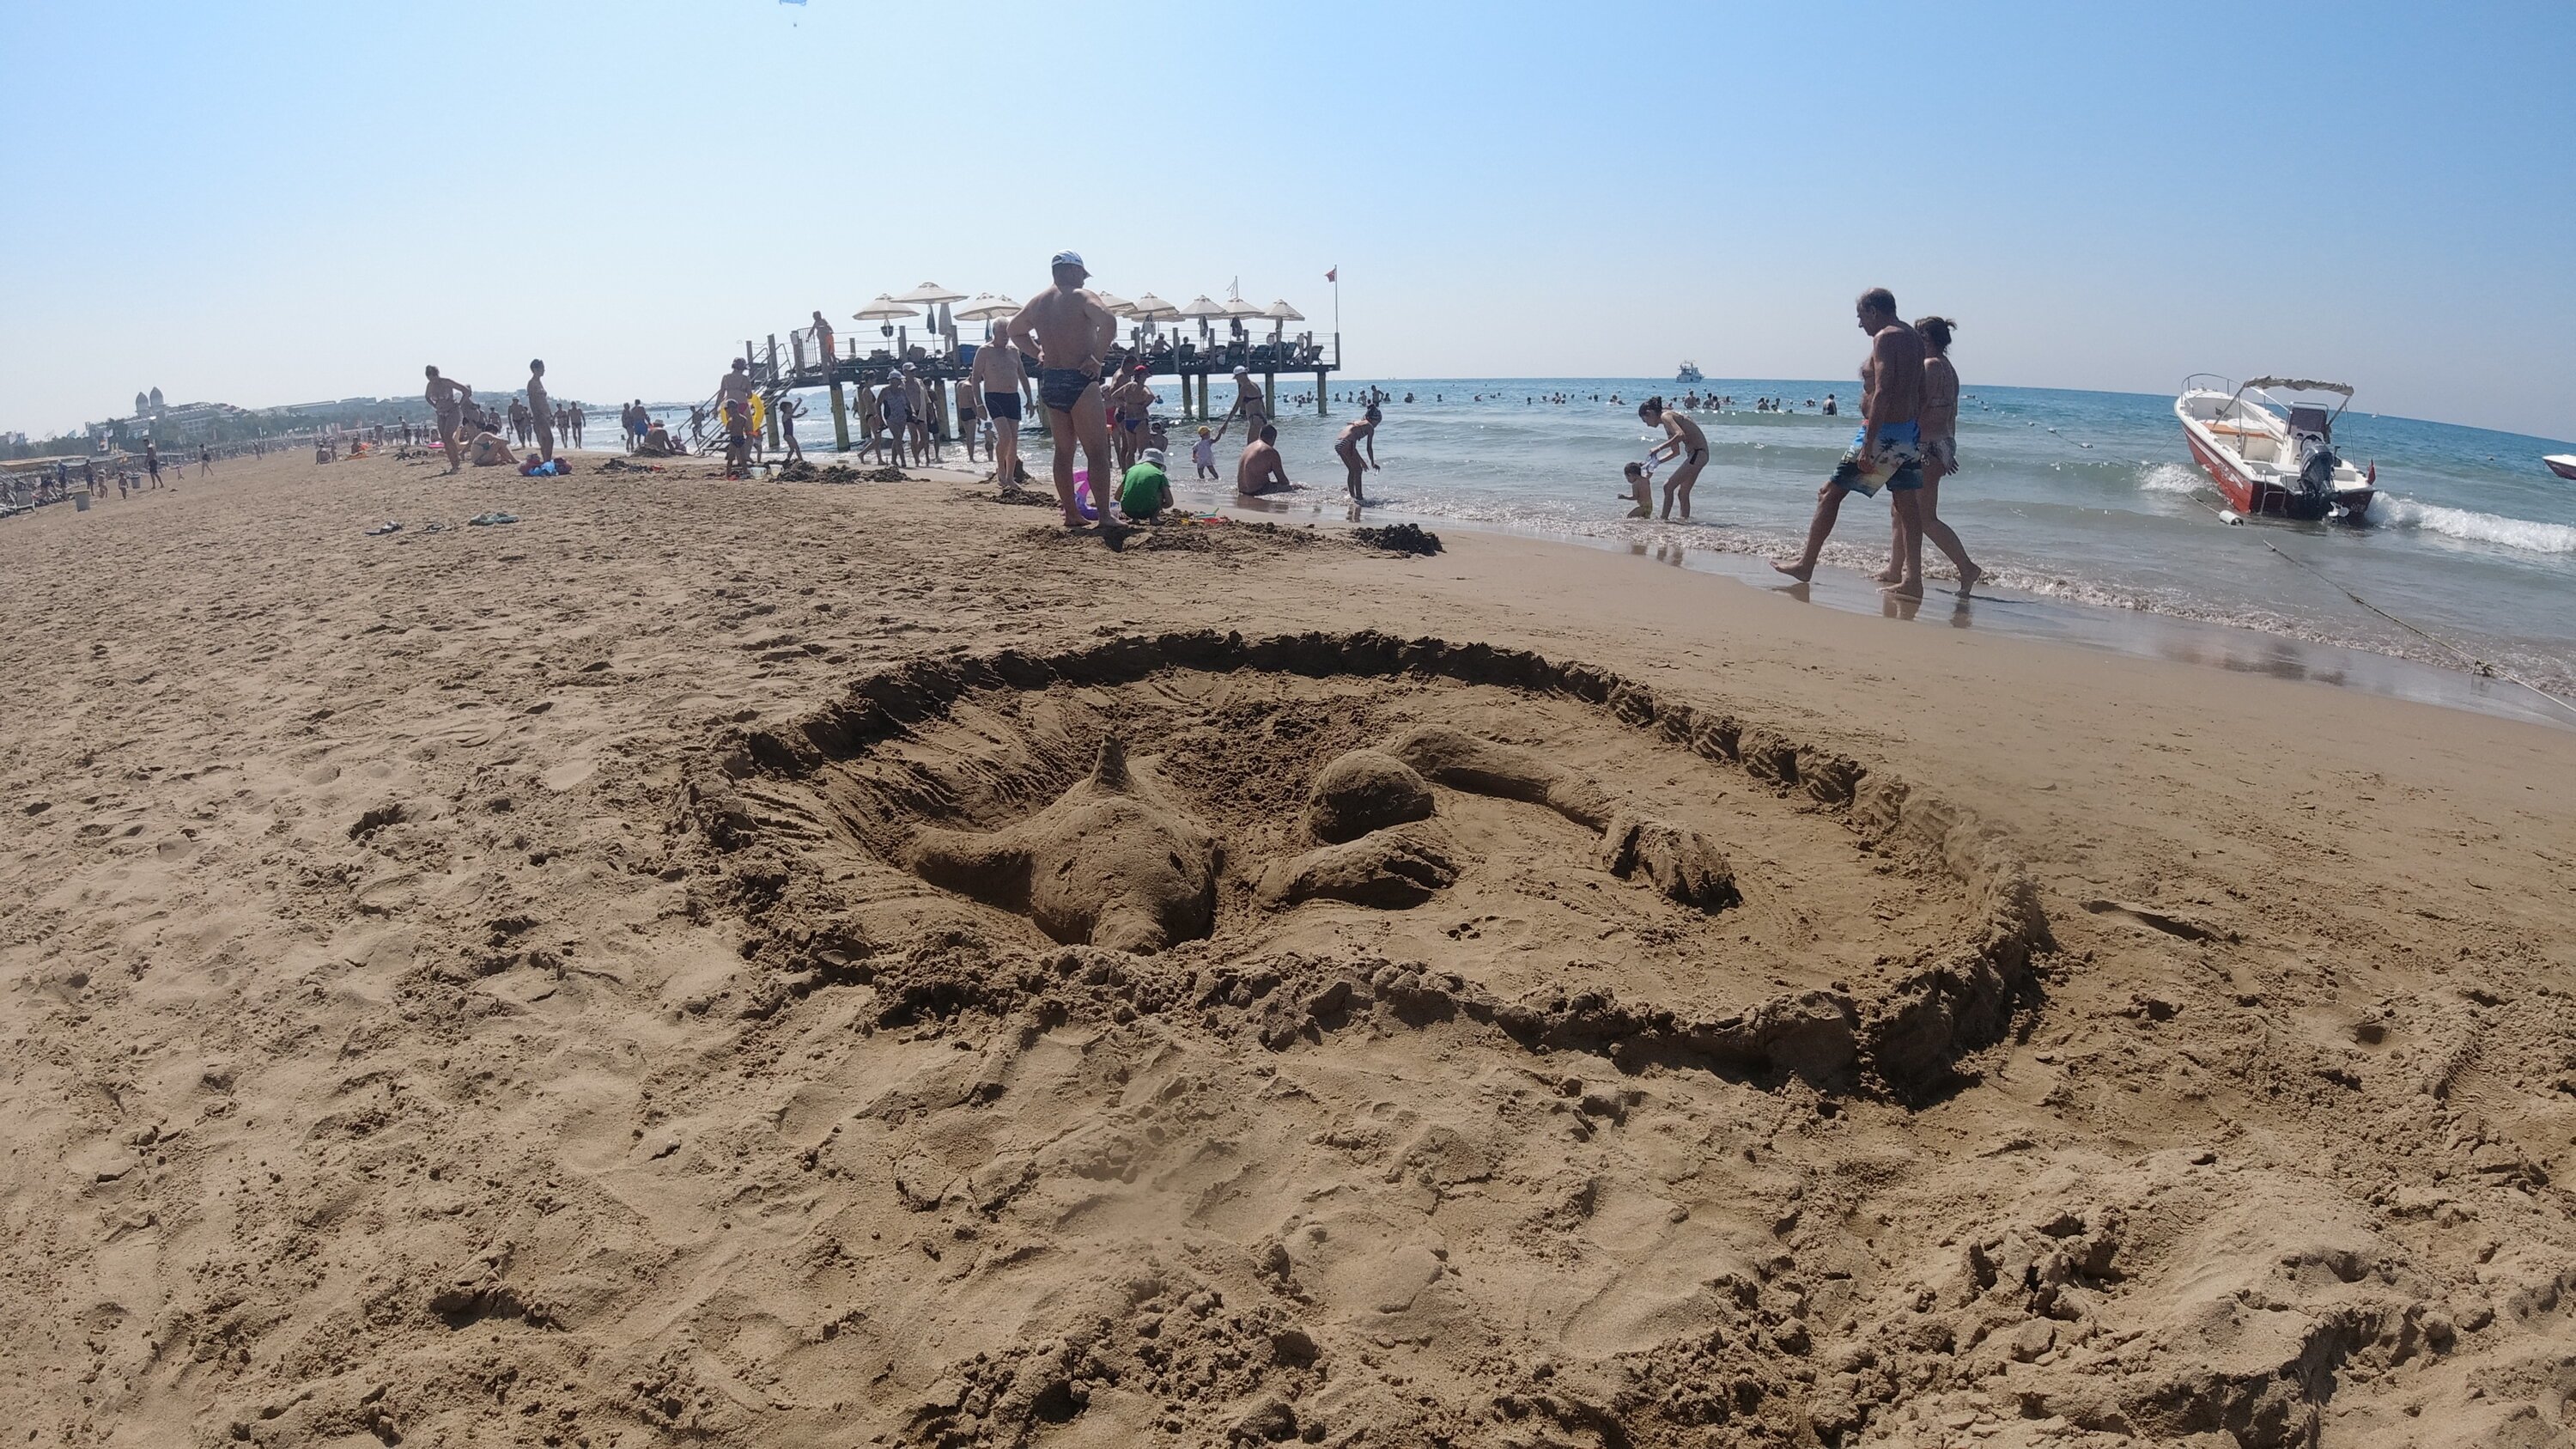 Турция песчаный пляж отдых с детьми. Песчаные пляжи Турции. Песочные пляжи в Турции. Турция песочный пляж черепахи. Пляжи Турции сегодня.